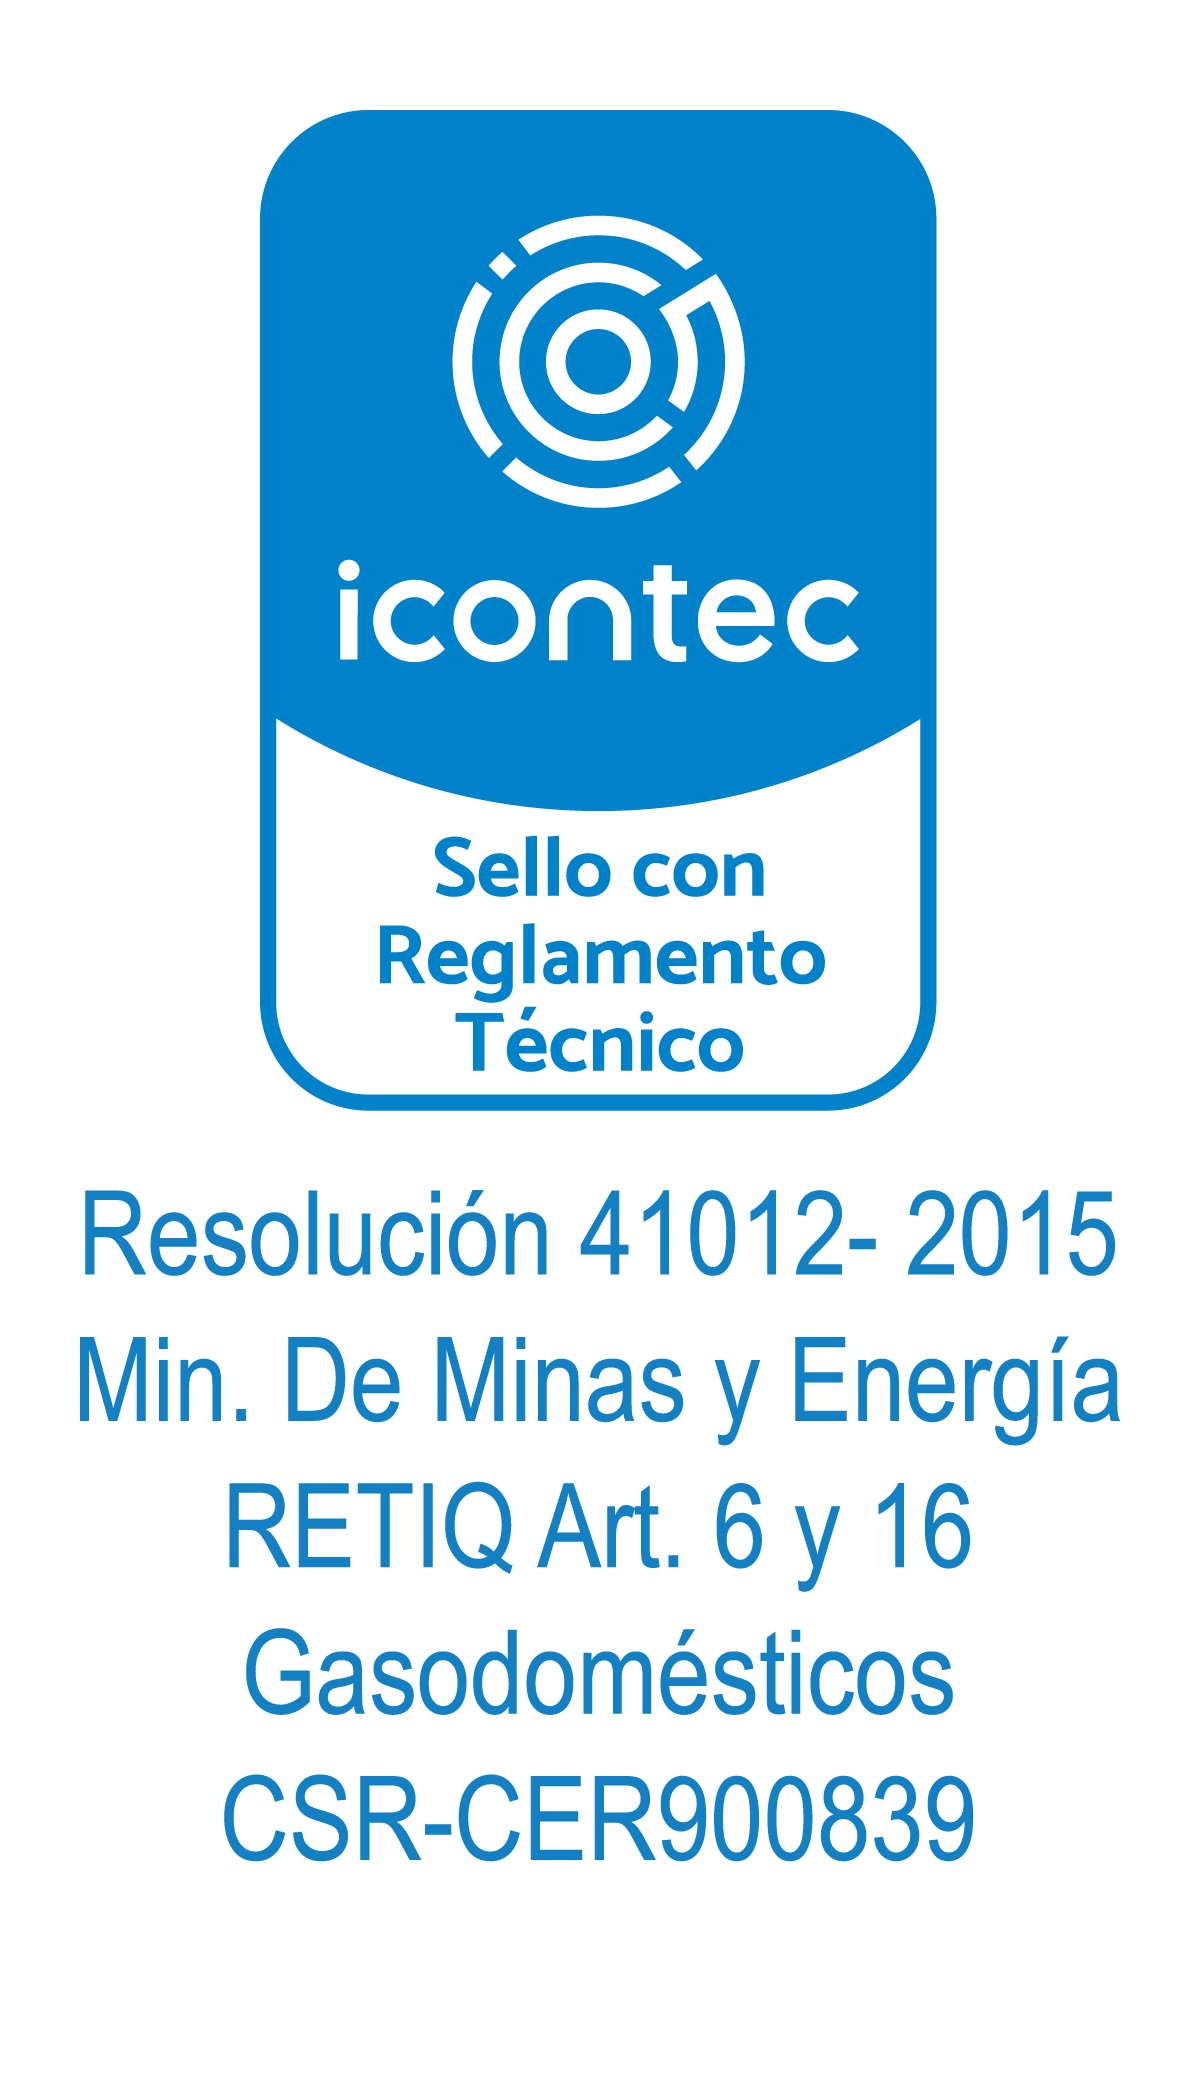 Icontec CSR -CER900839